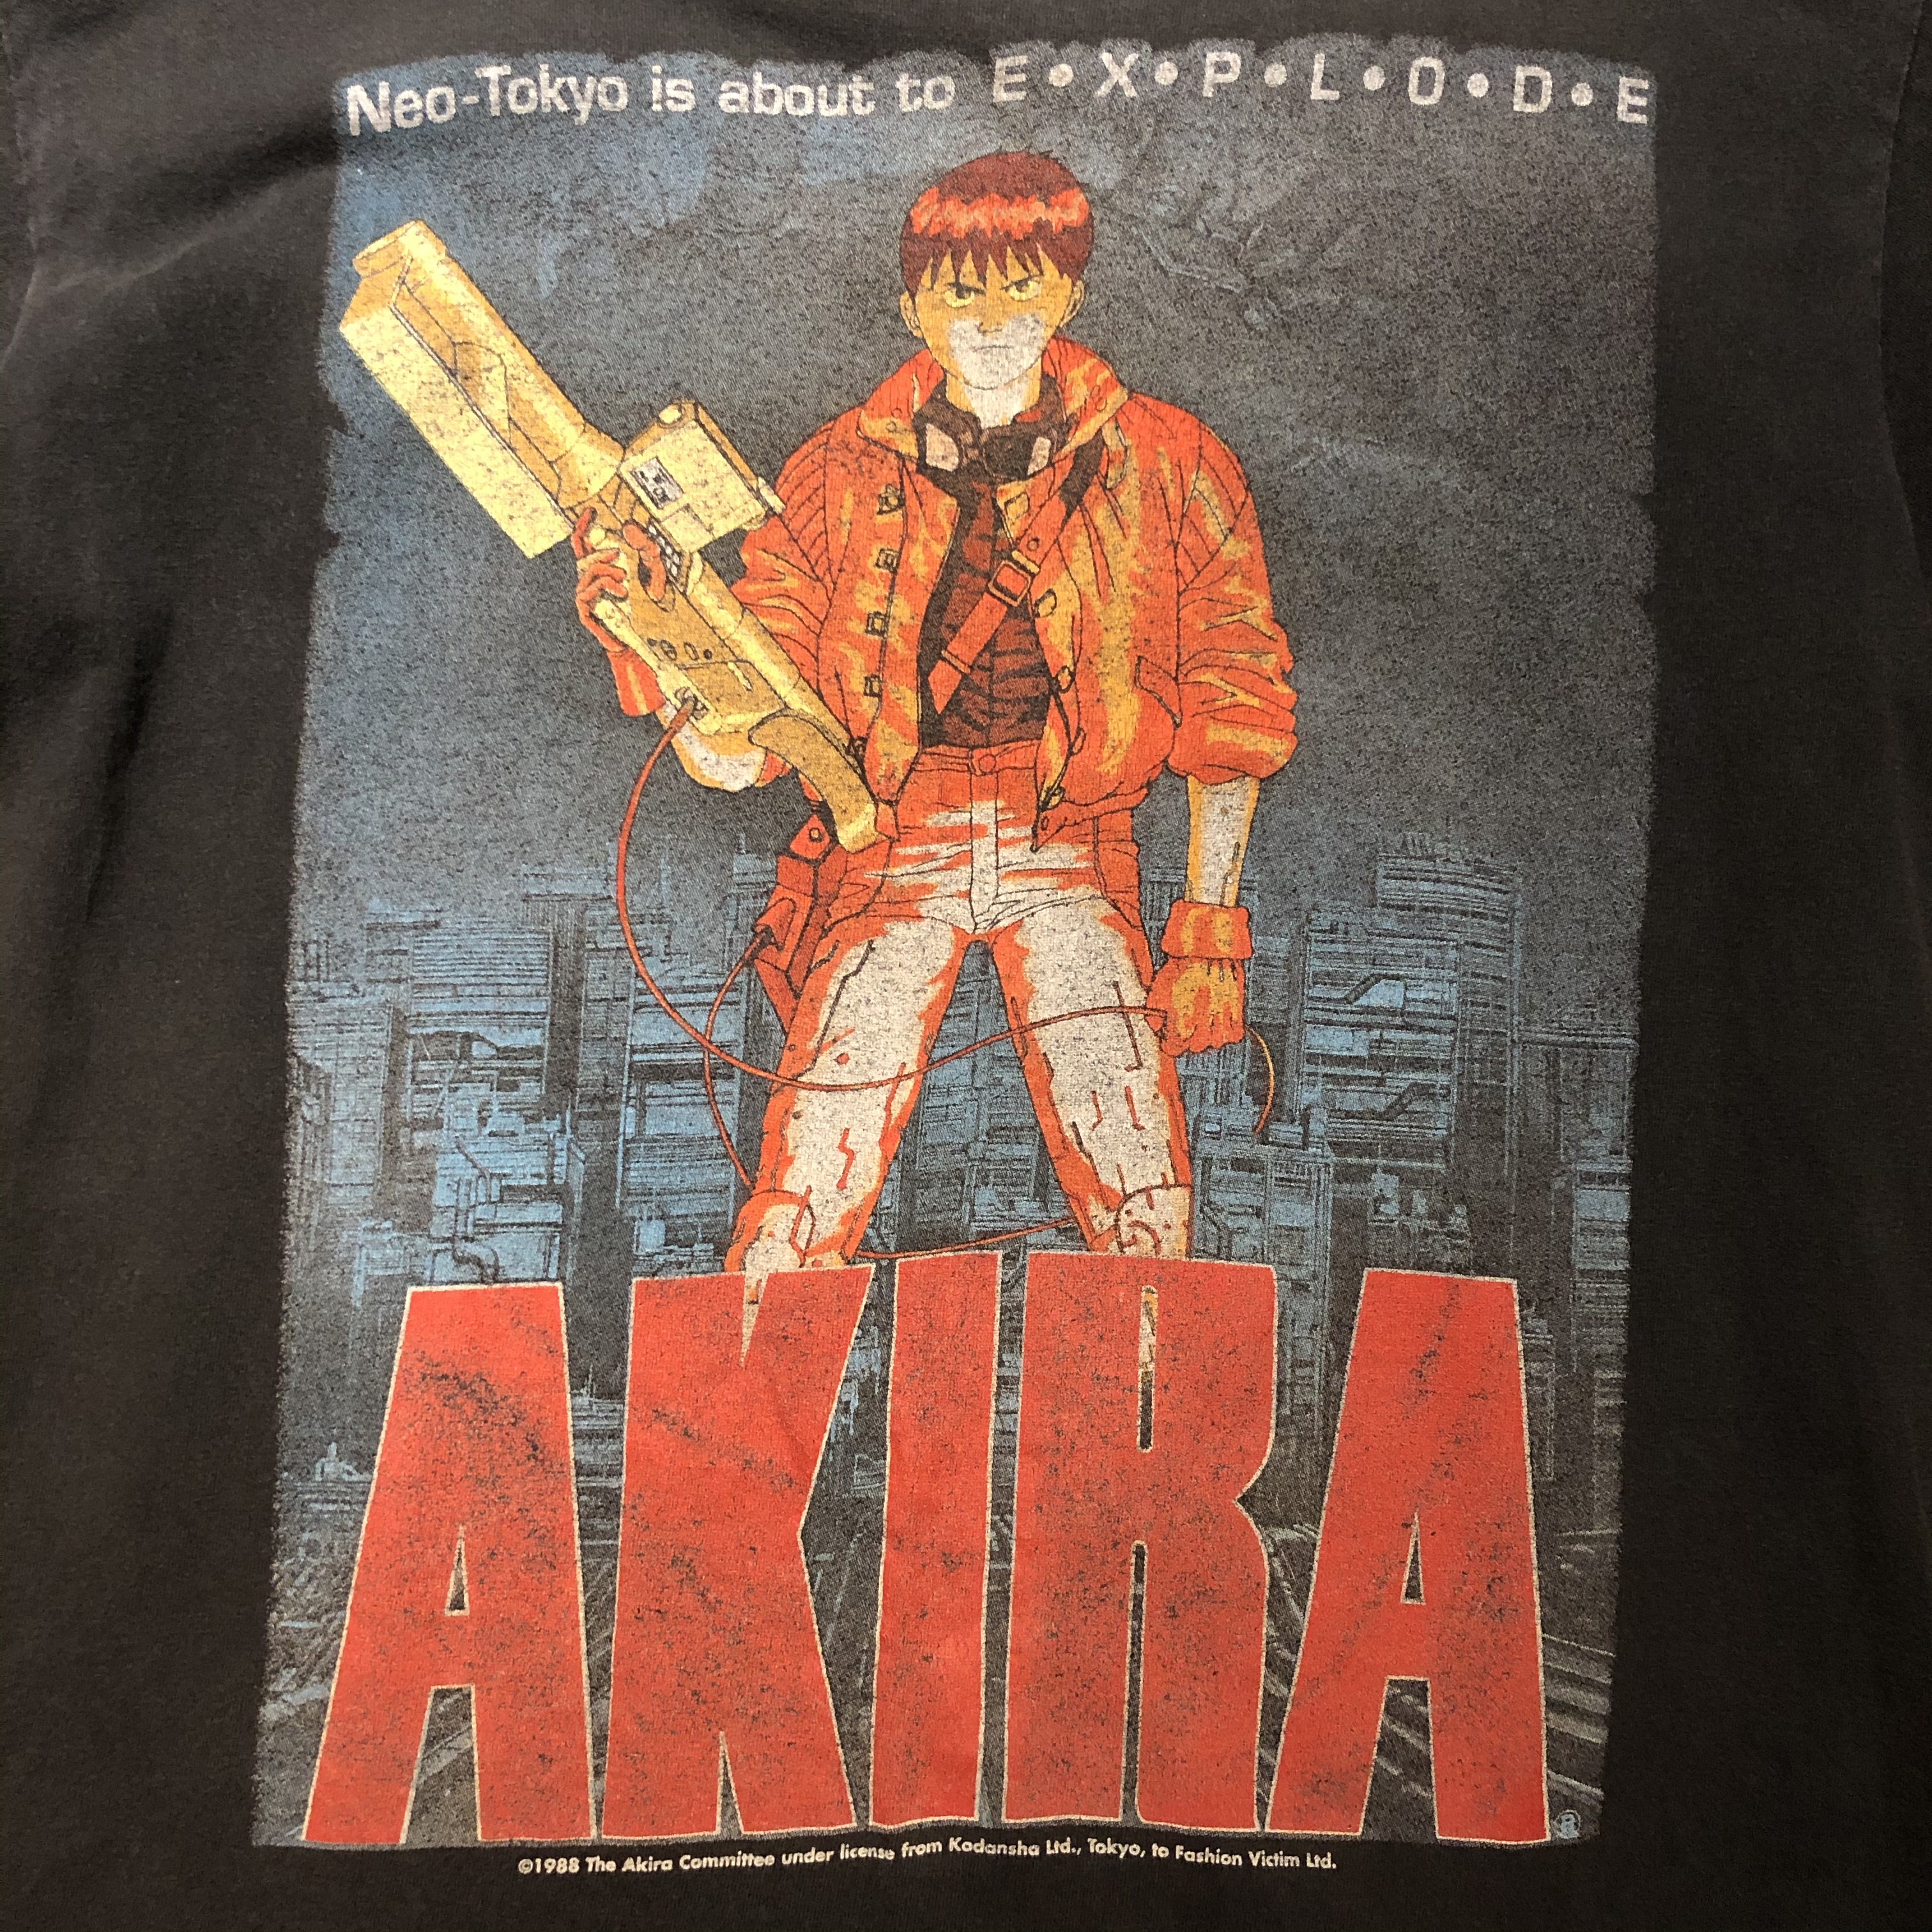 90s Fashion Victim Akira T Shirt What Z Up